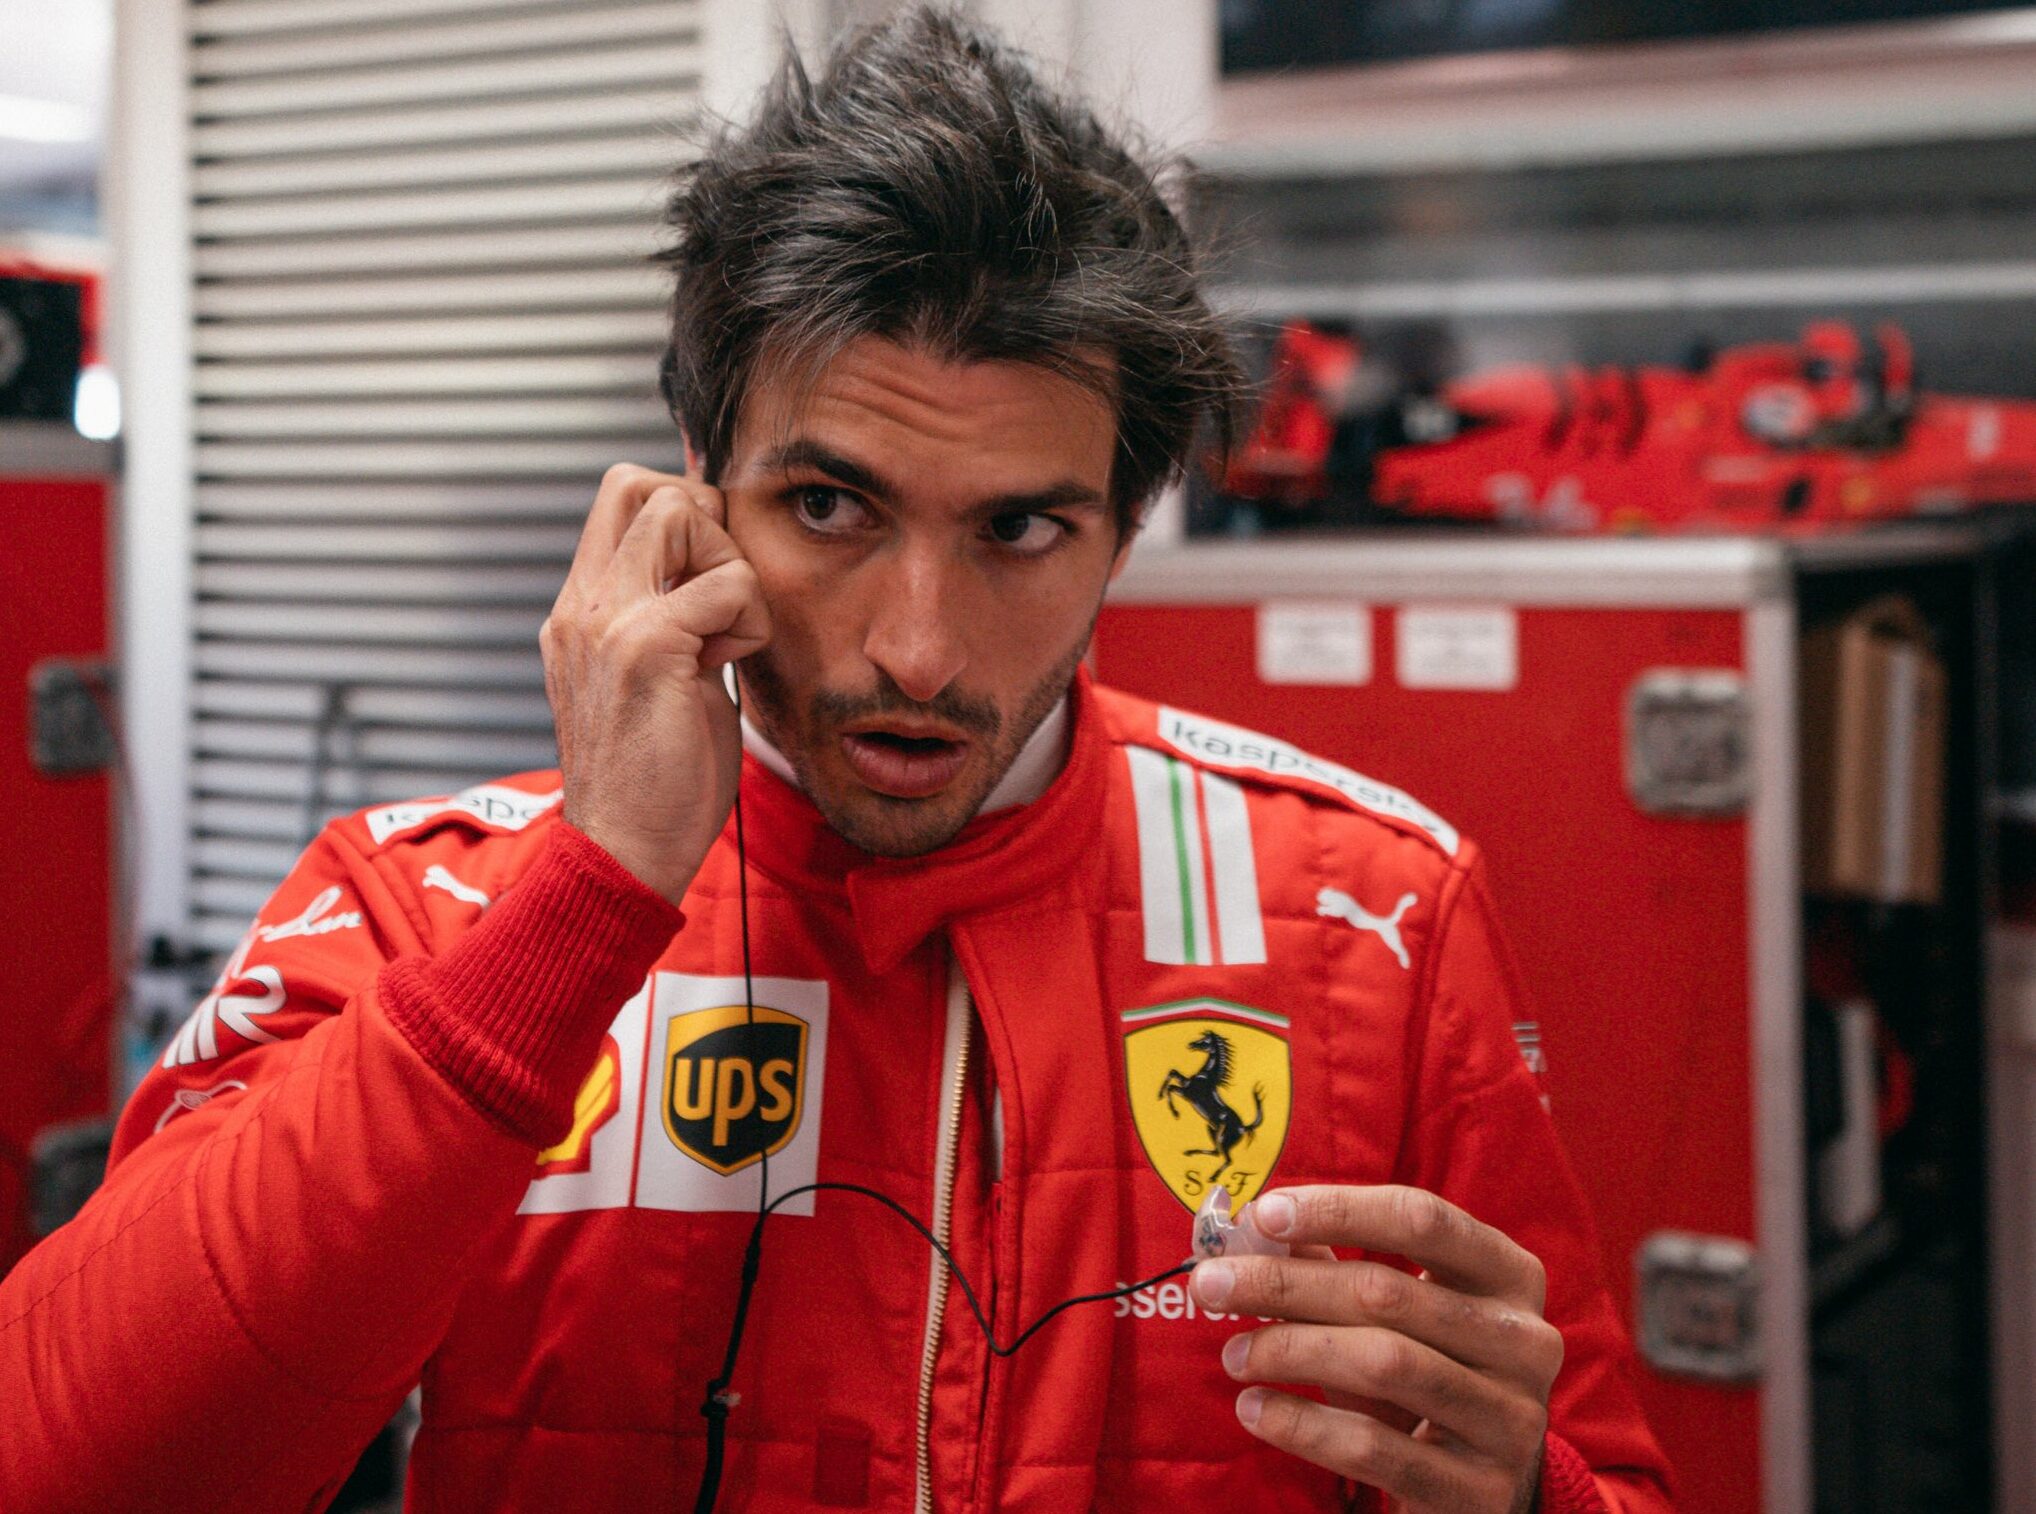 F1 - Sainz pense être au bon endroit chez Ferrari pour devenir champion